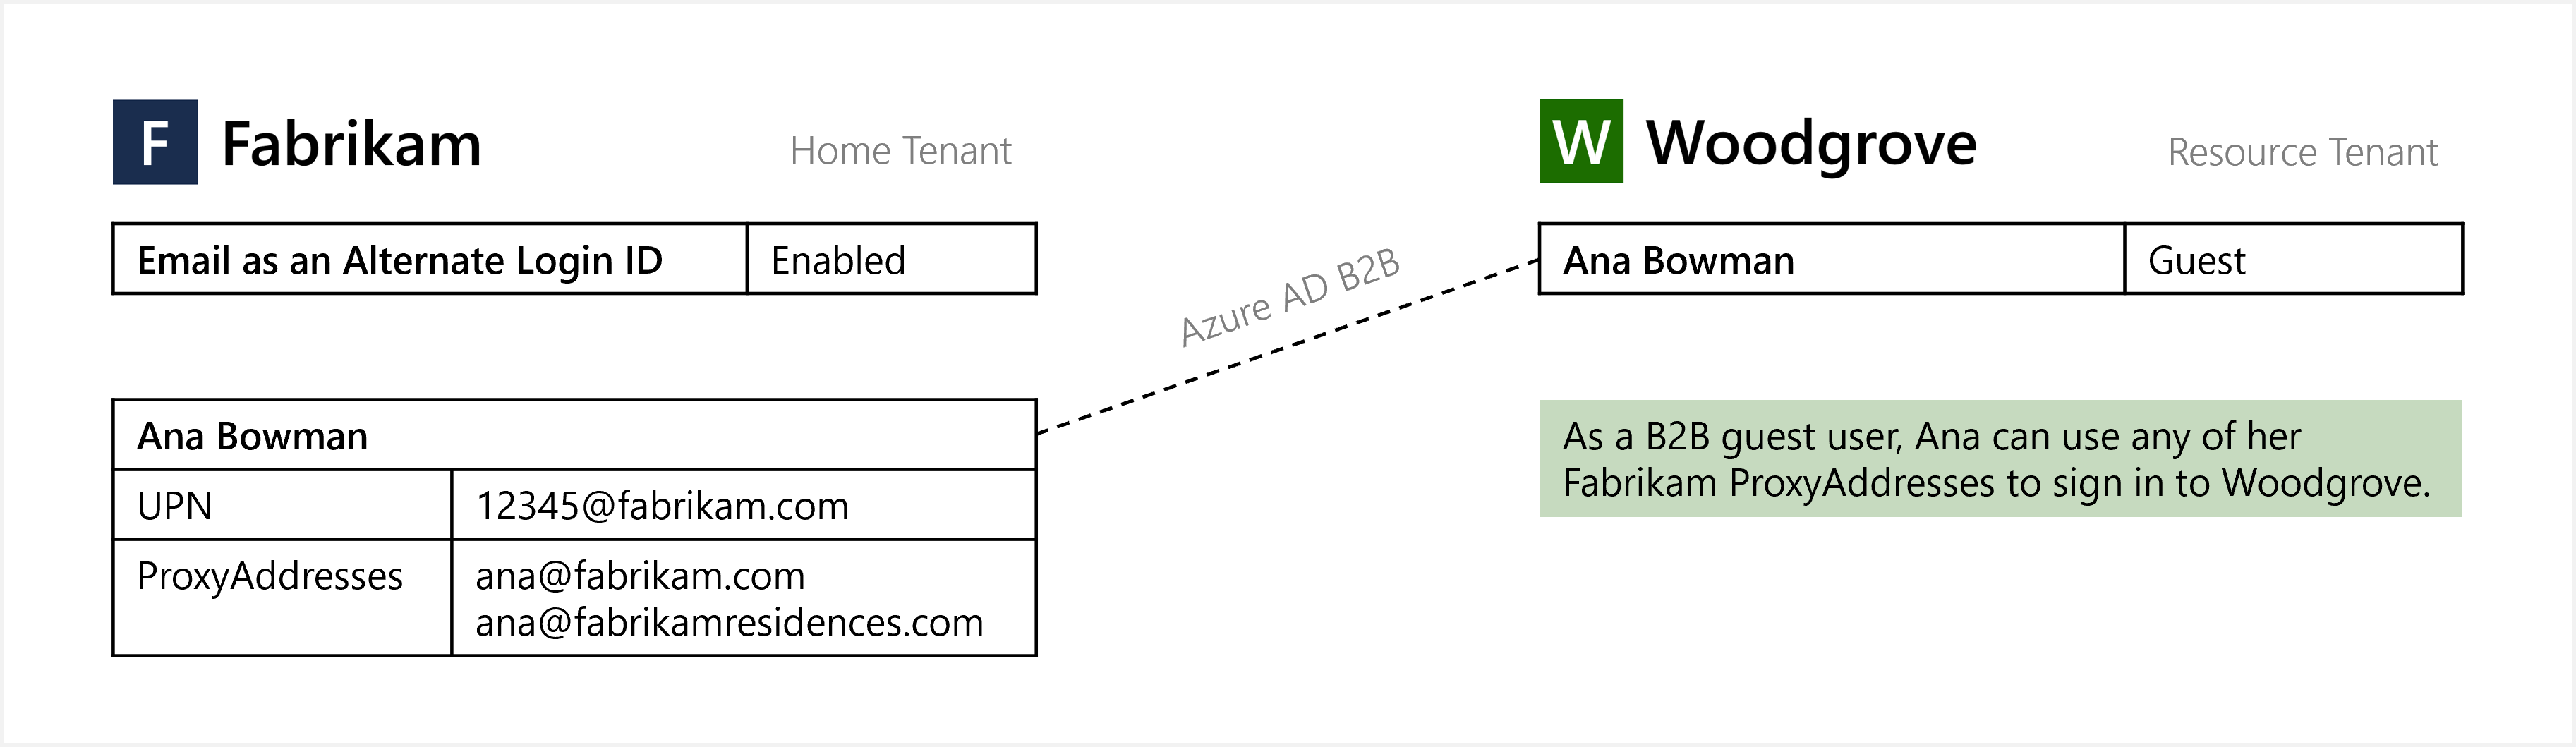 Diagrama del correo electrónico como identificador de inicio de sesión alternativo para el inicio de sesión del usuario invitado B2B.